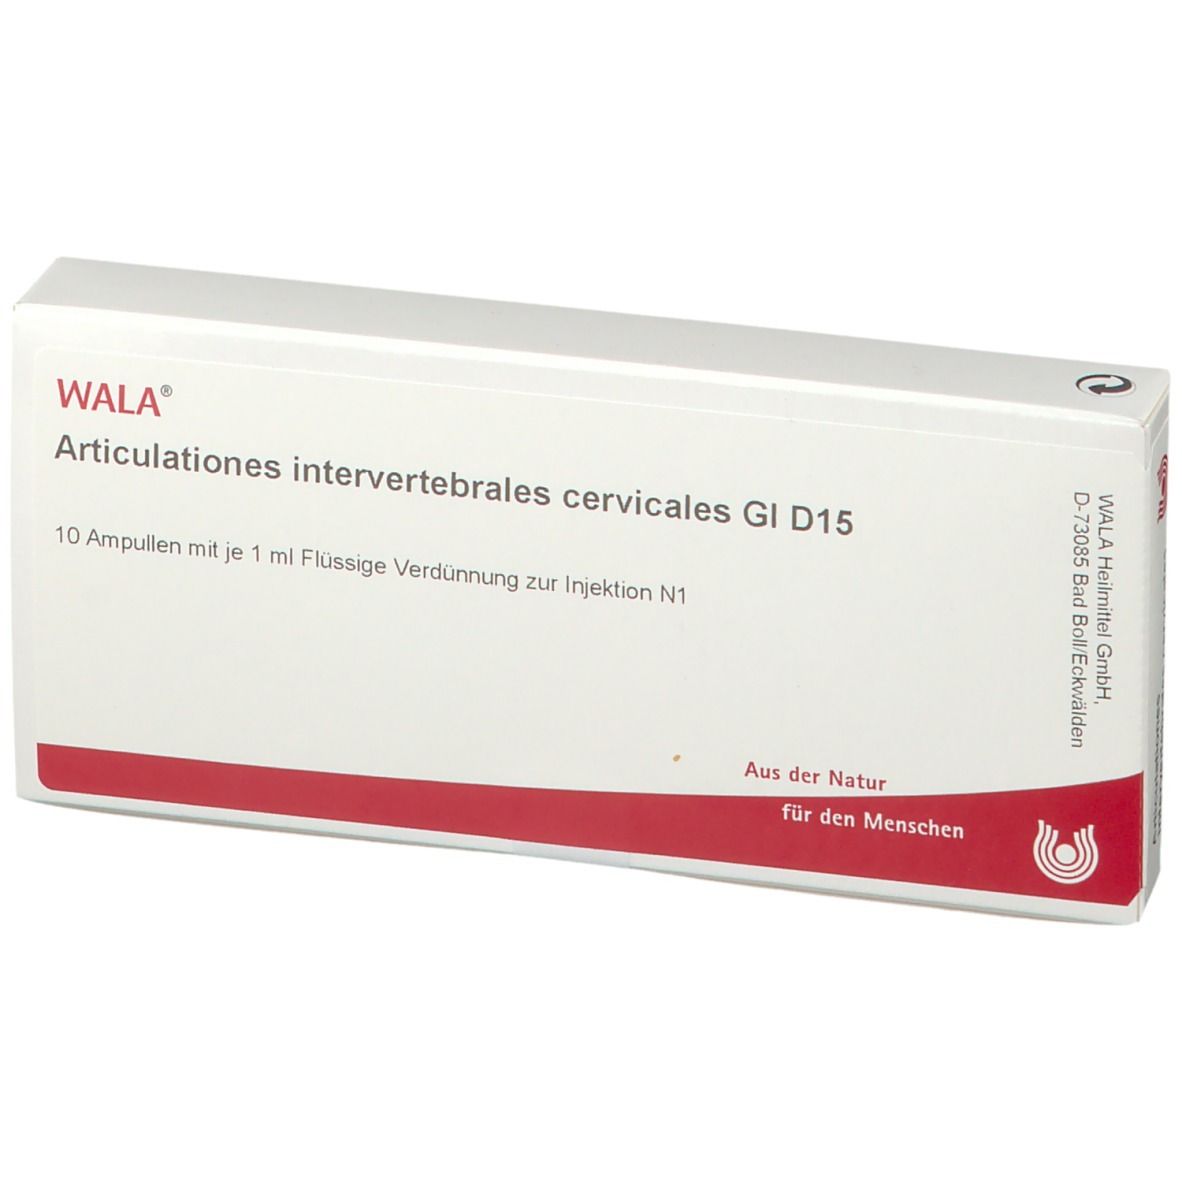 WALA® Articulationes intervertebrales cervicales Gl D 15